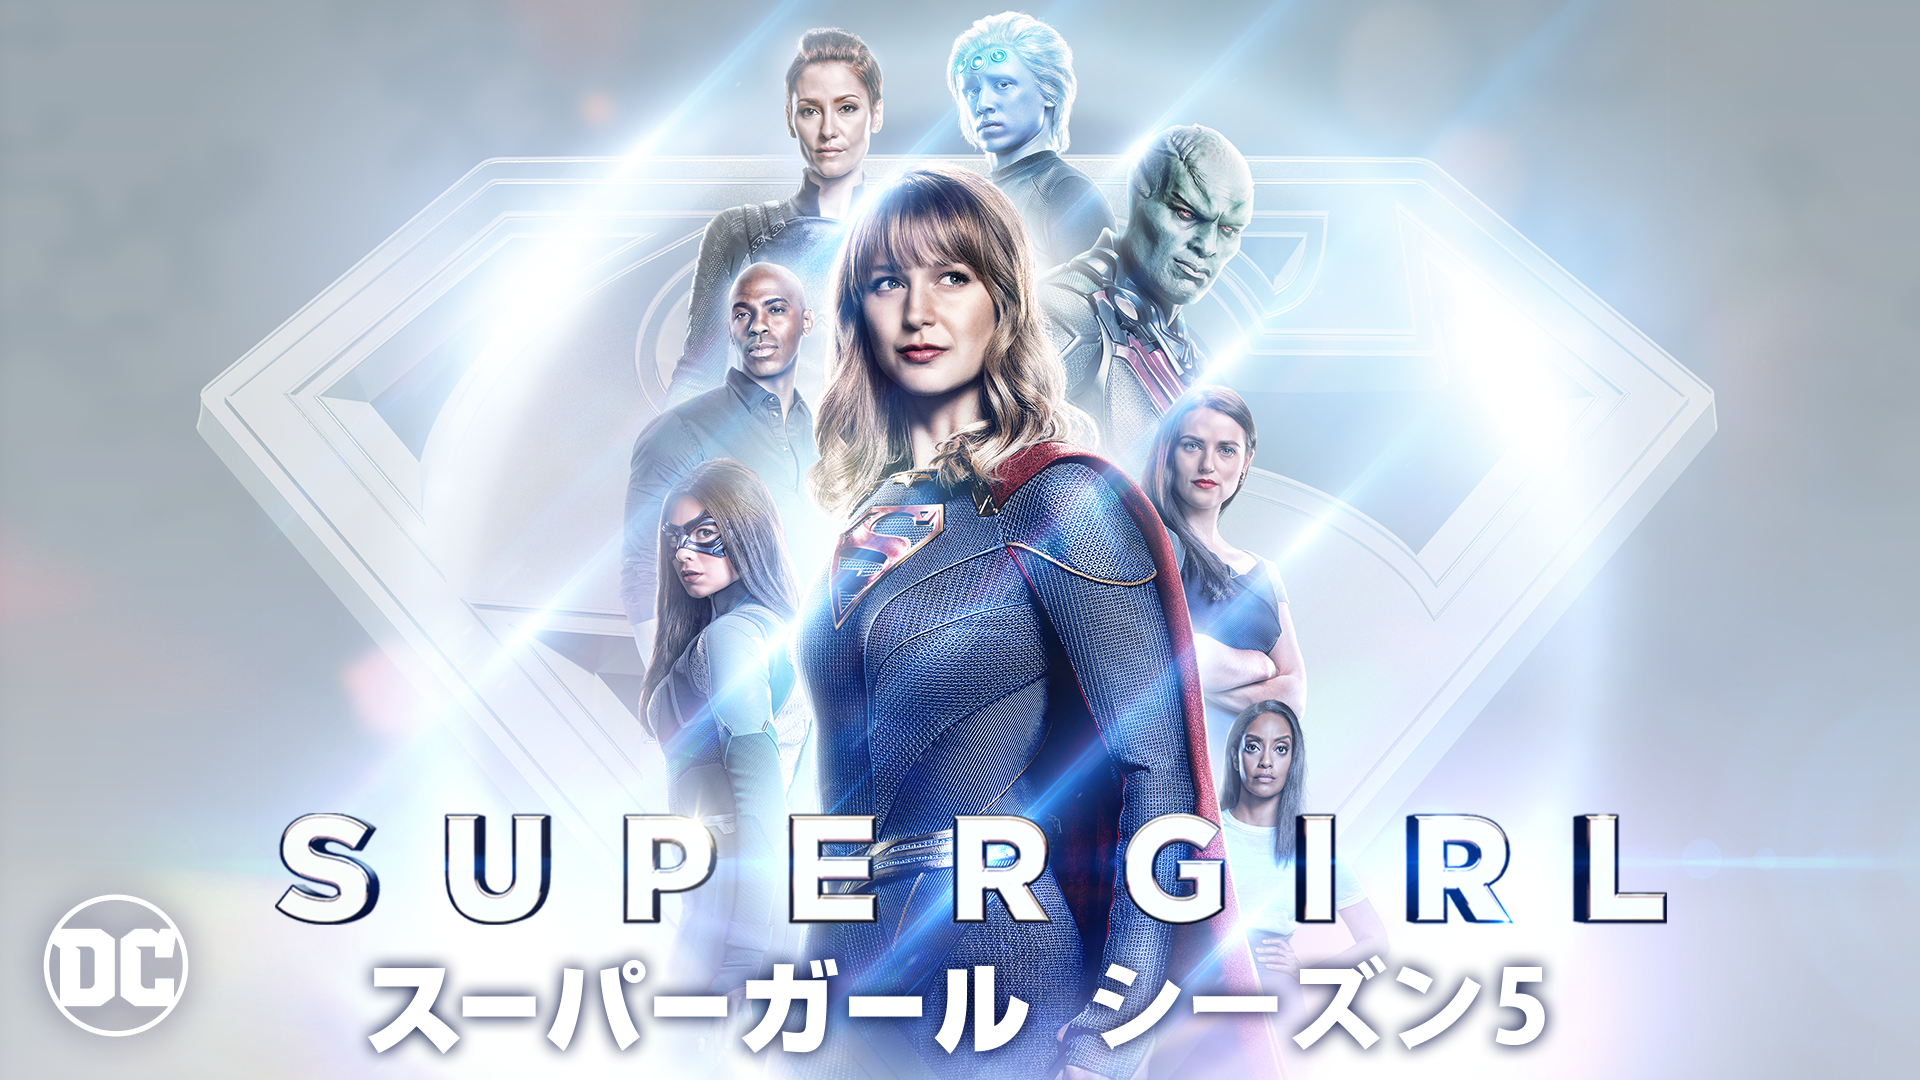 海外ドラマ Supergirl スーパーガール シーズン5 動画を見放題で無料視聴 1話から最終回まで あらすじと評判